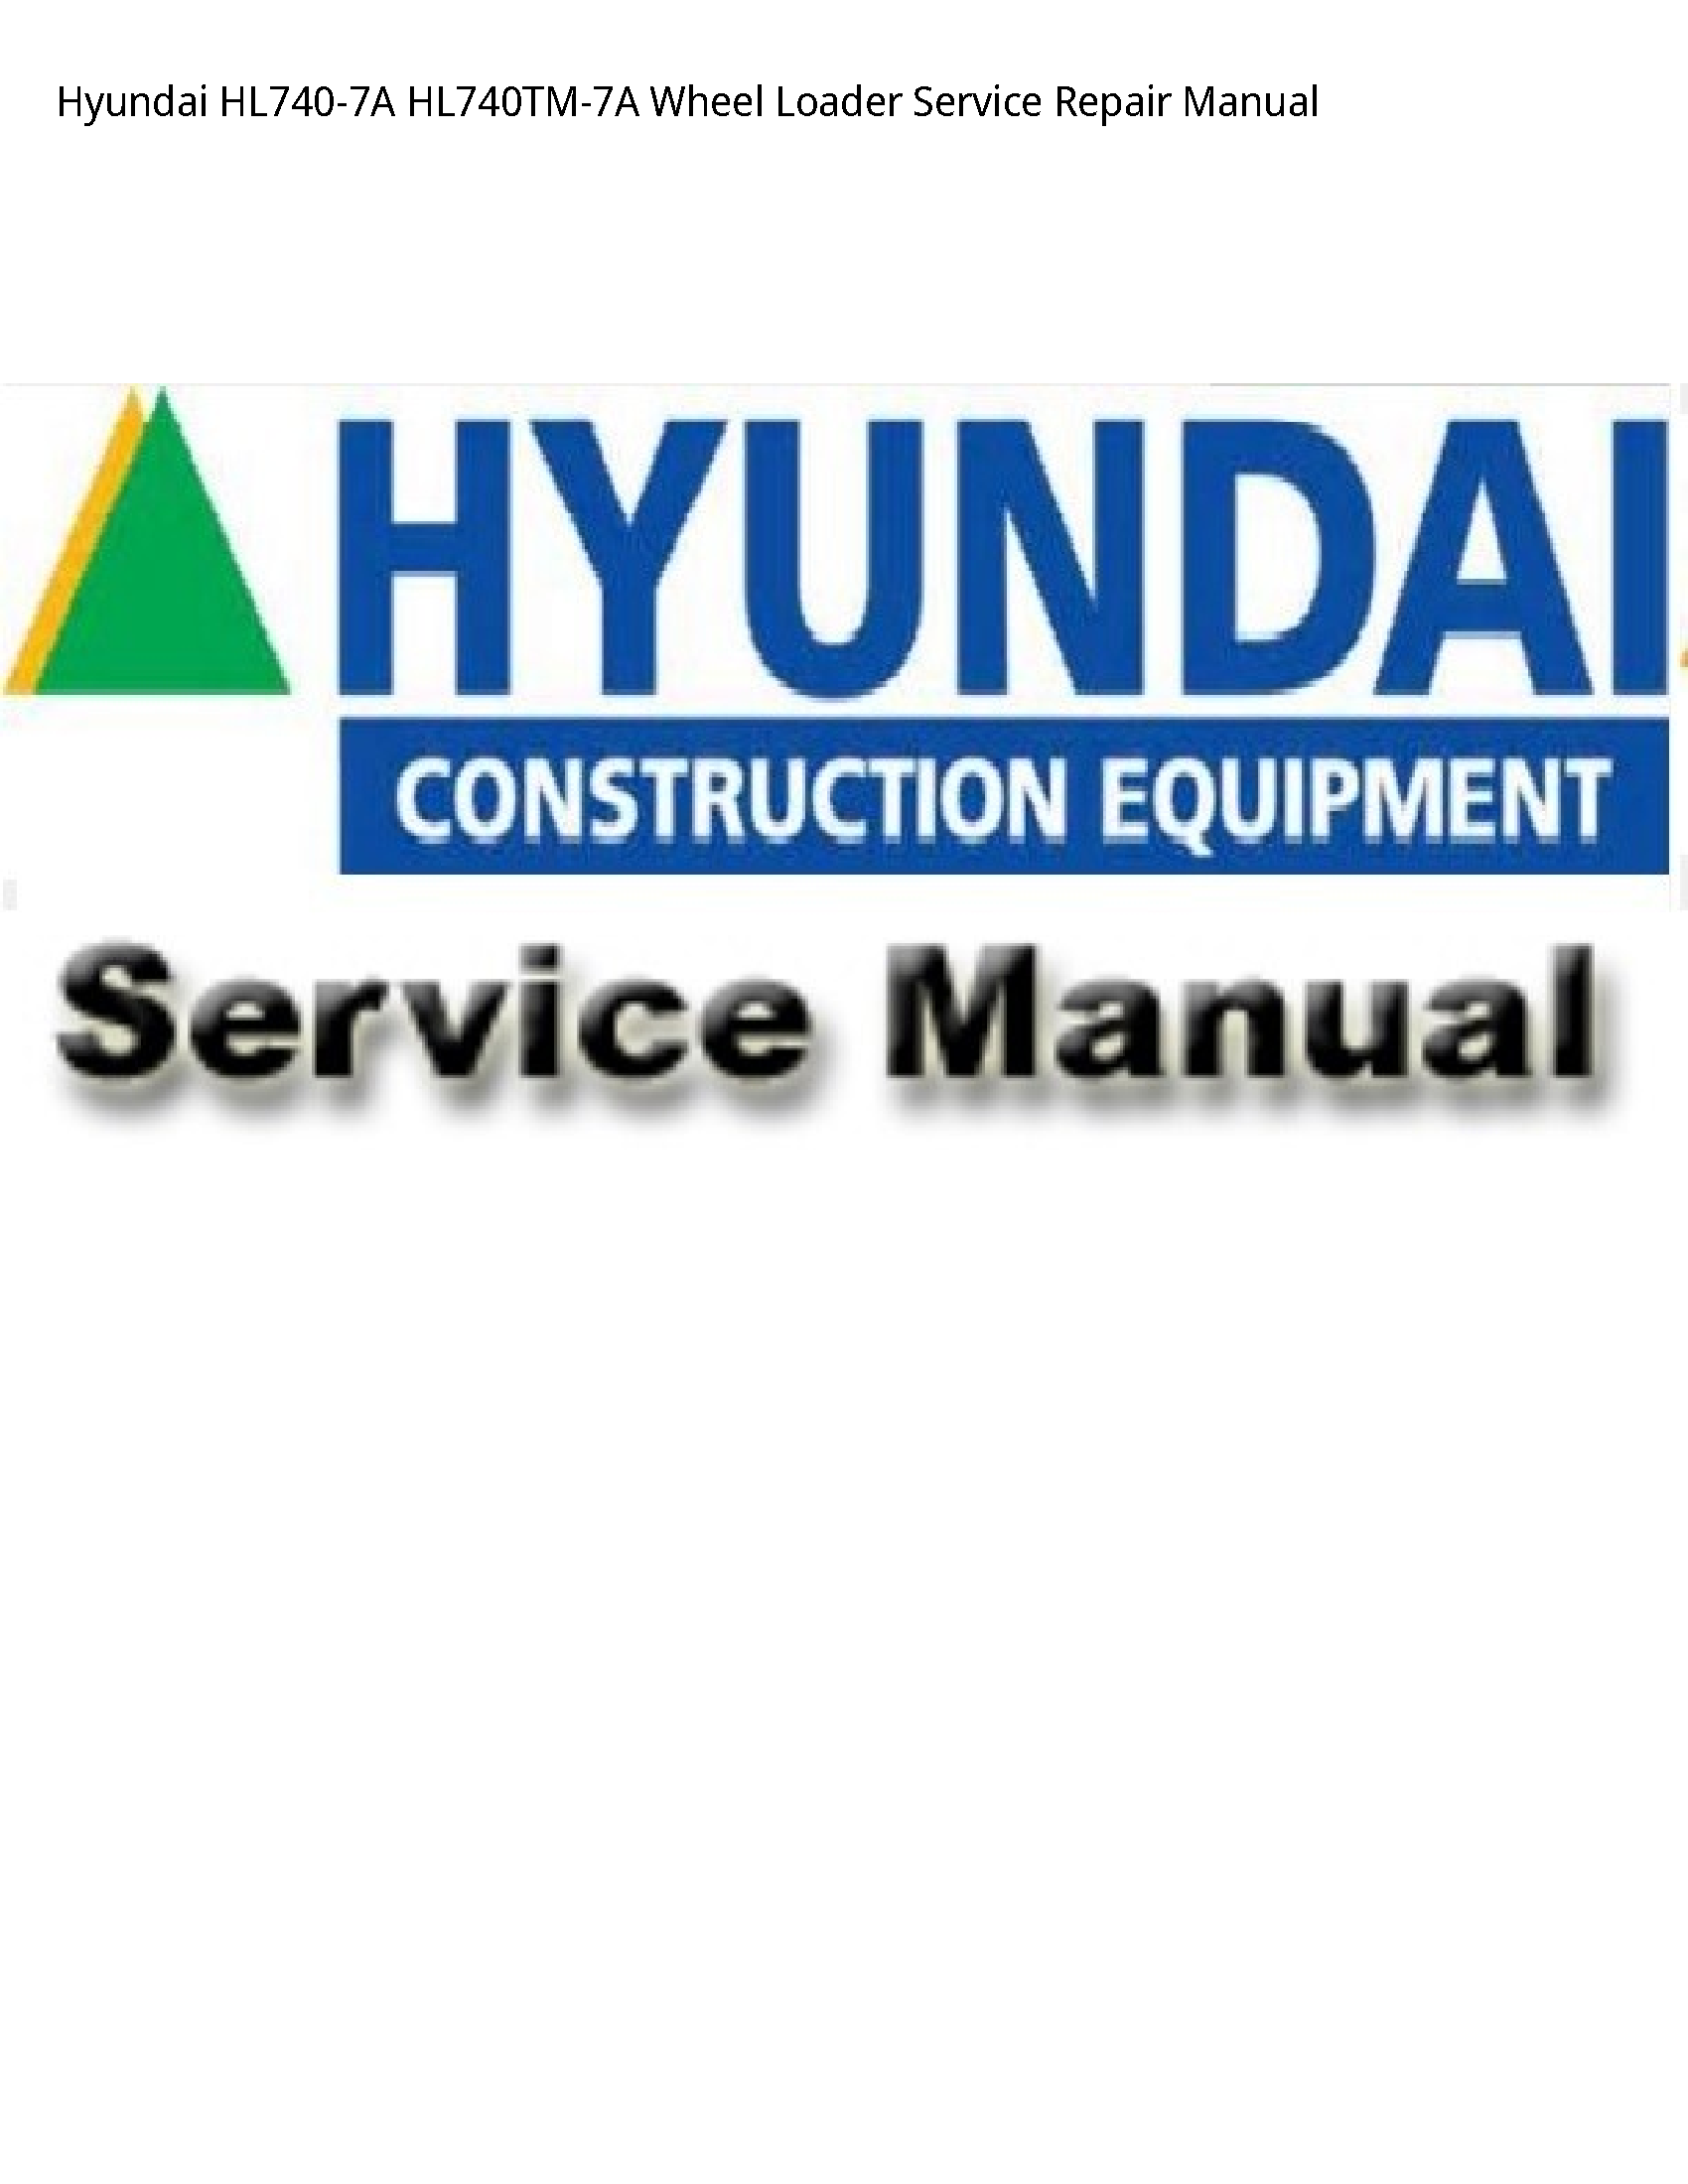 Hyundai HL740-7A Wheel Loader manual